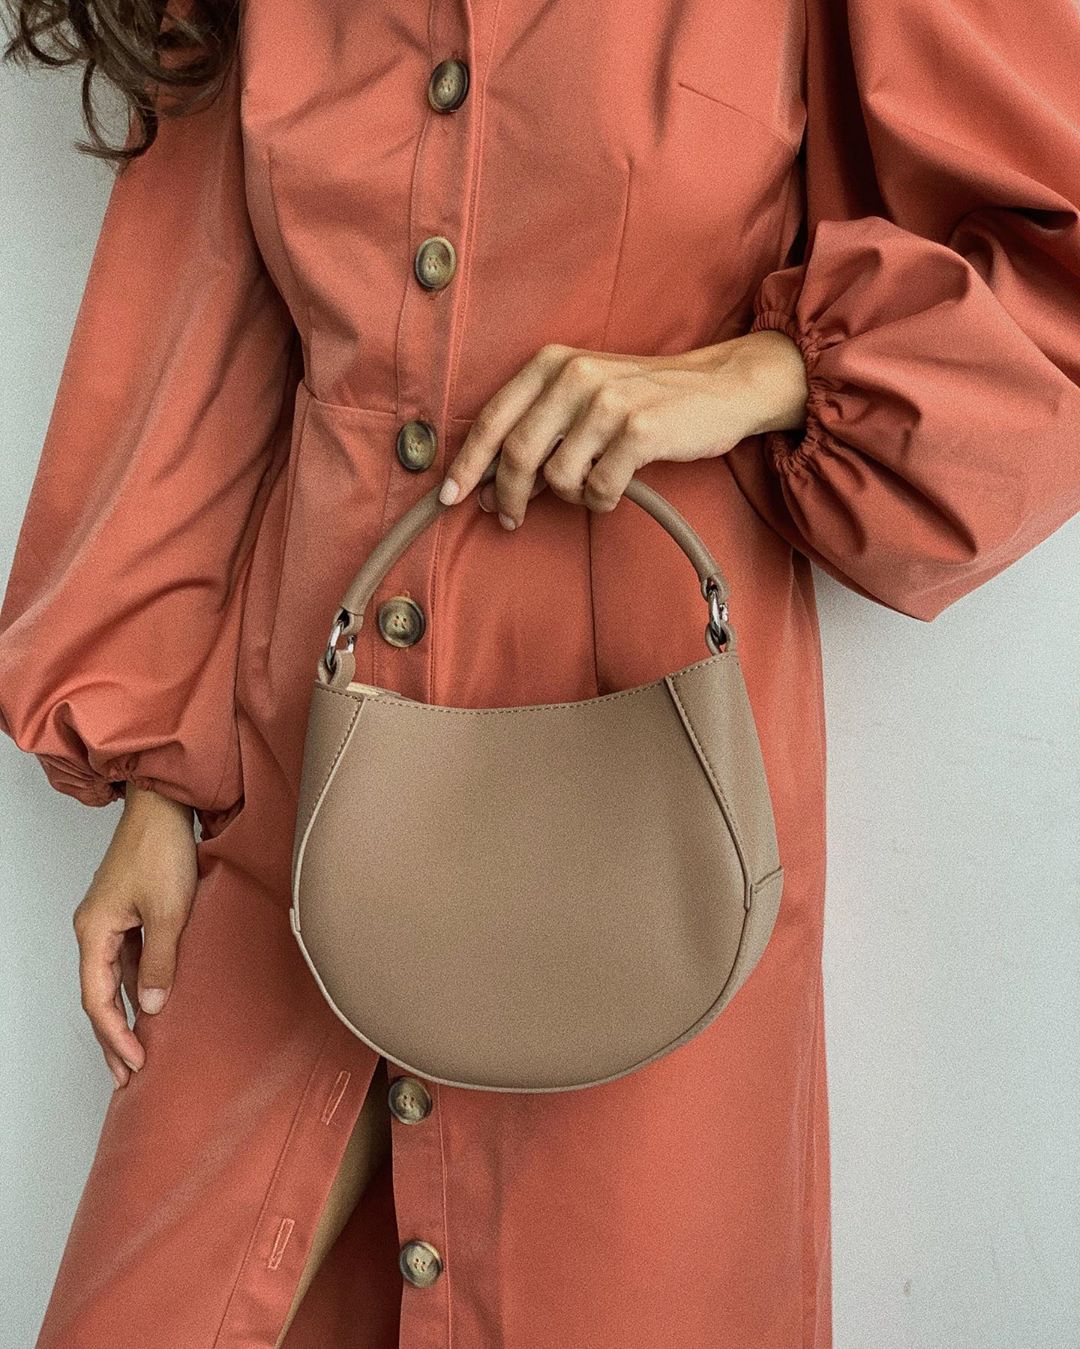 Mario Berluchi - Идеальная сумка из натуральной кожи лаконичного и стильного дизайна♥️
Стоимость: 6990₽ (вместо 8490₽)
Артикул: #13_4043_22